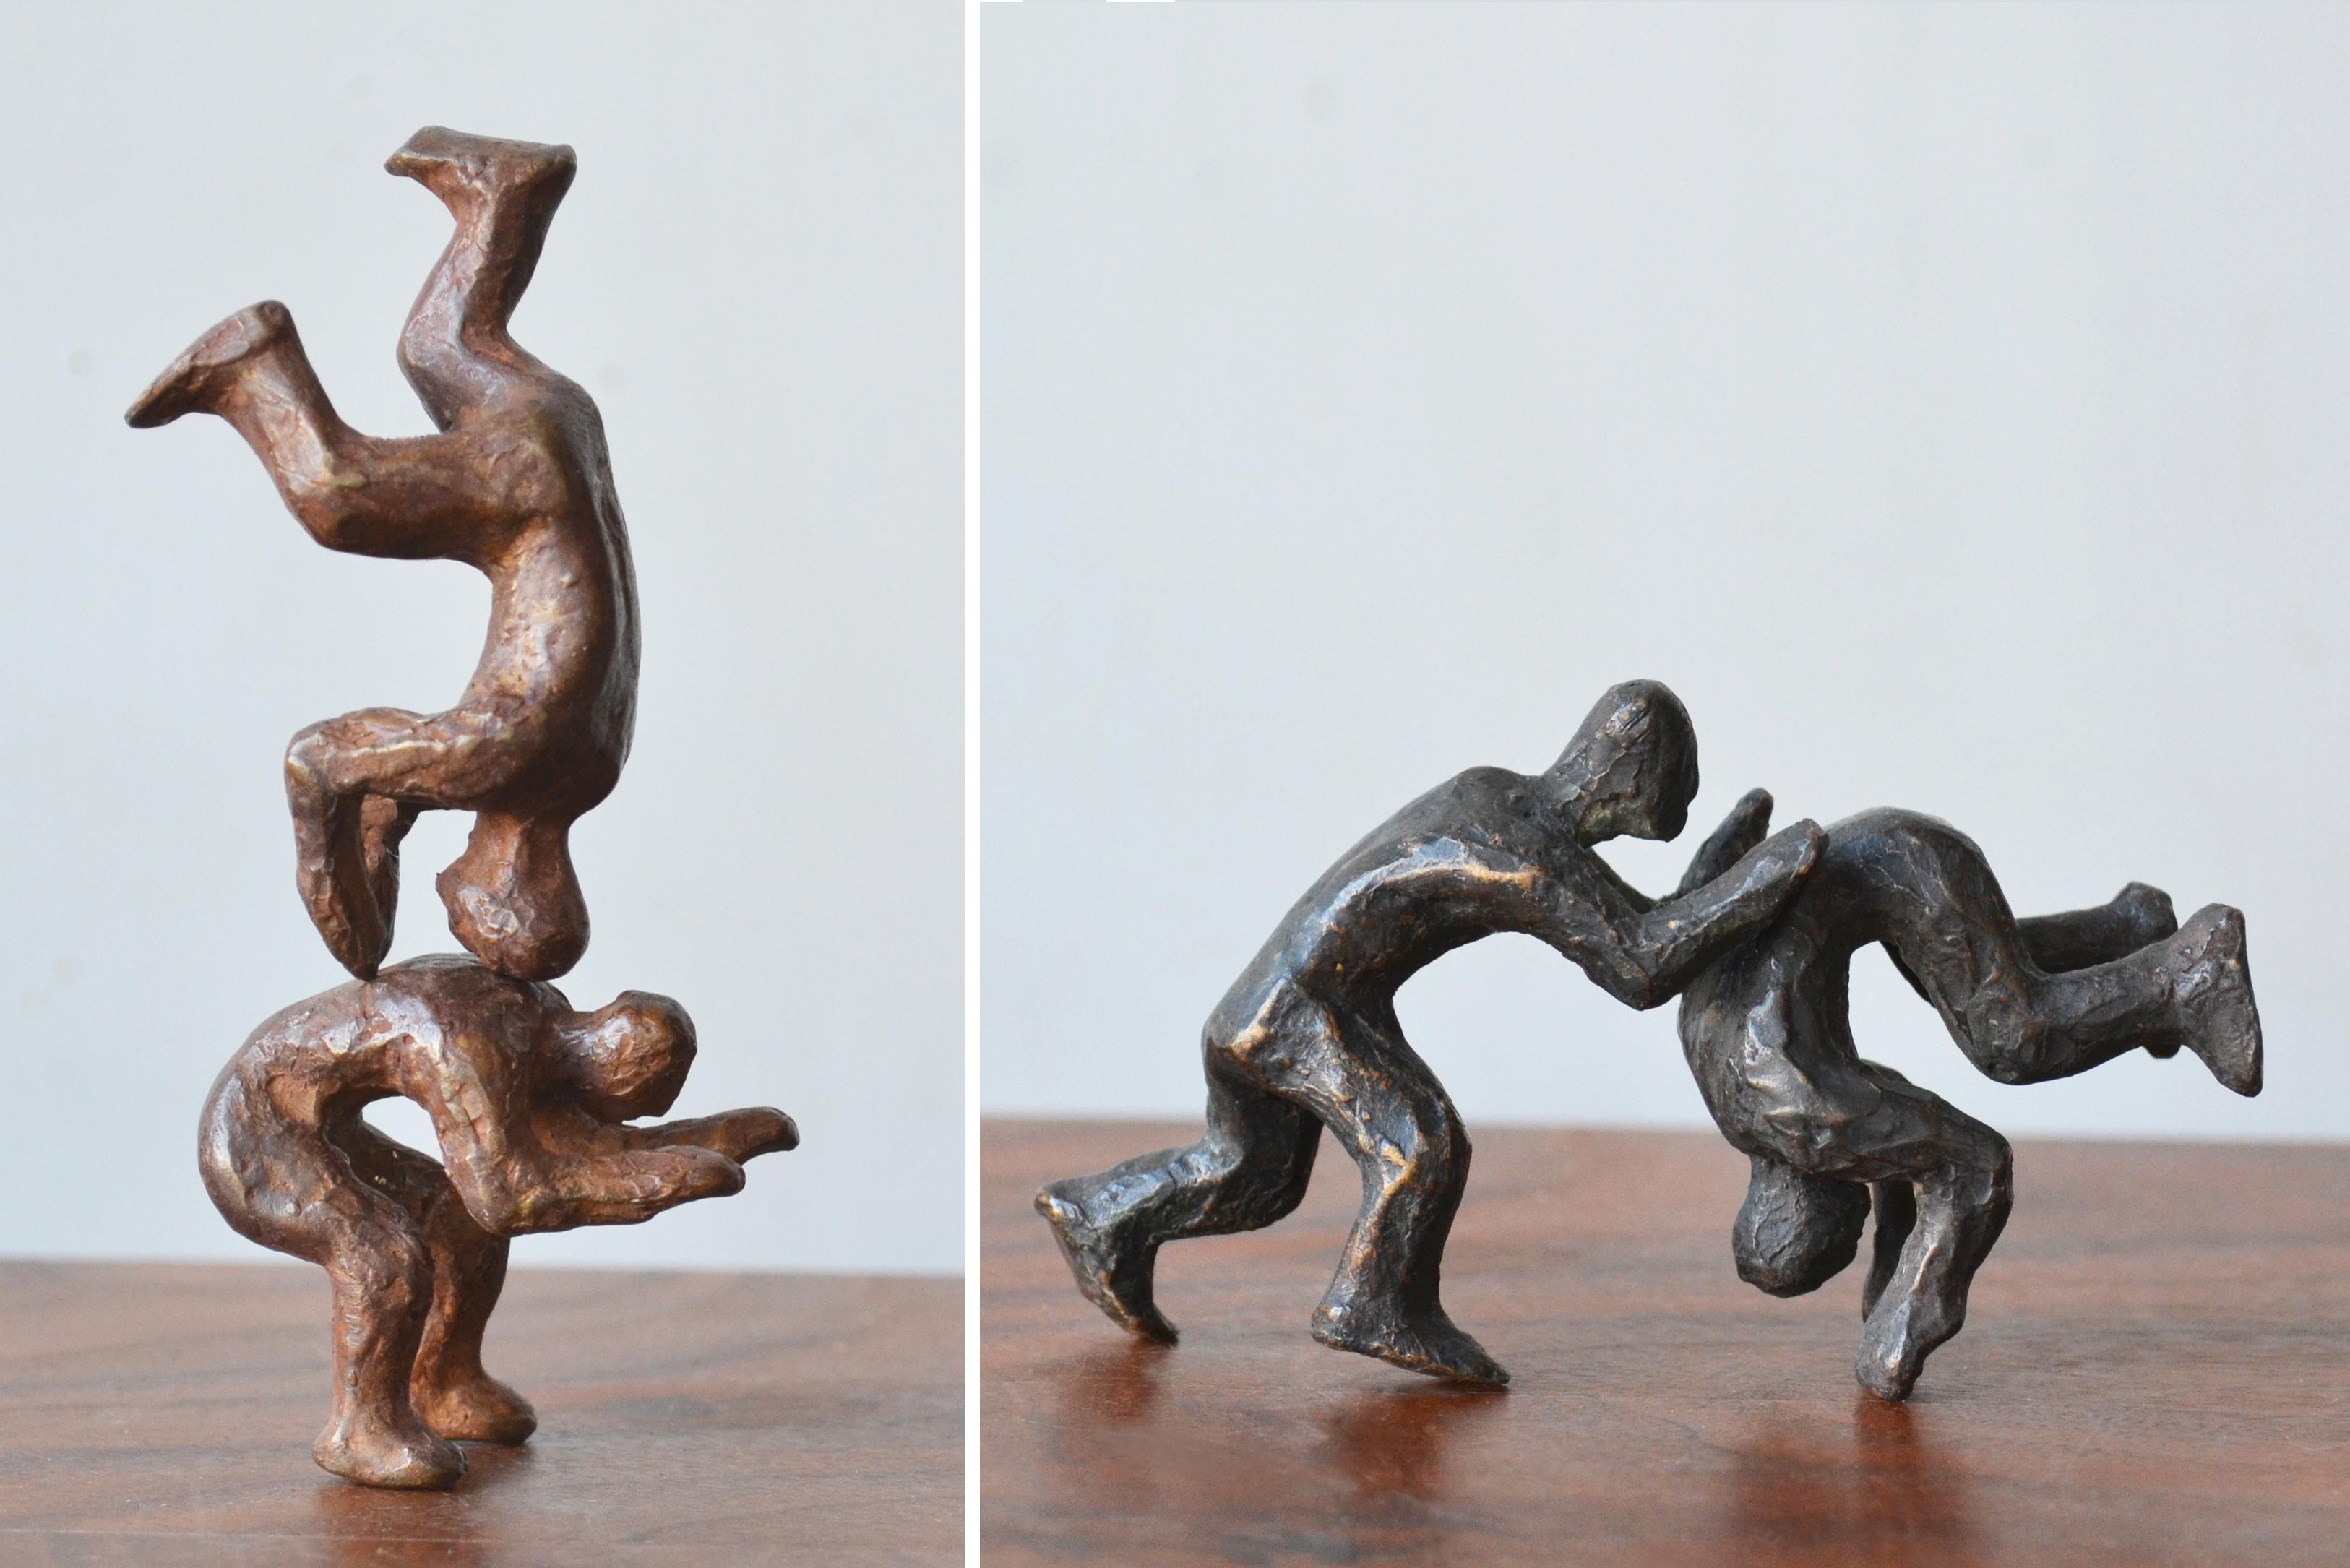 Figurative Sculpture Noa Bornstein - « Pourquoi combattre quand on peut jouer ? » 2 paires de figures interactives en bronze